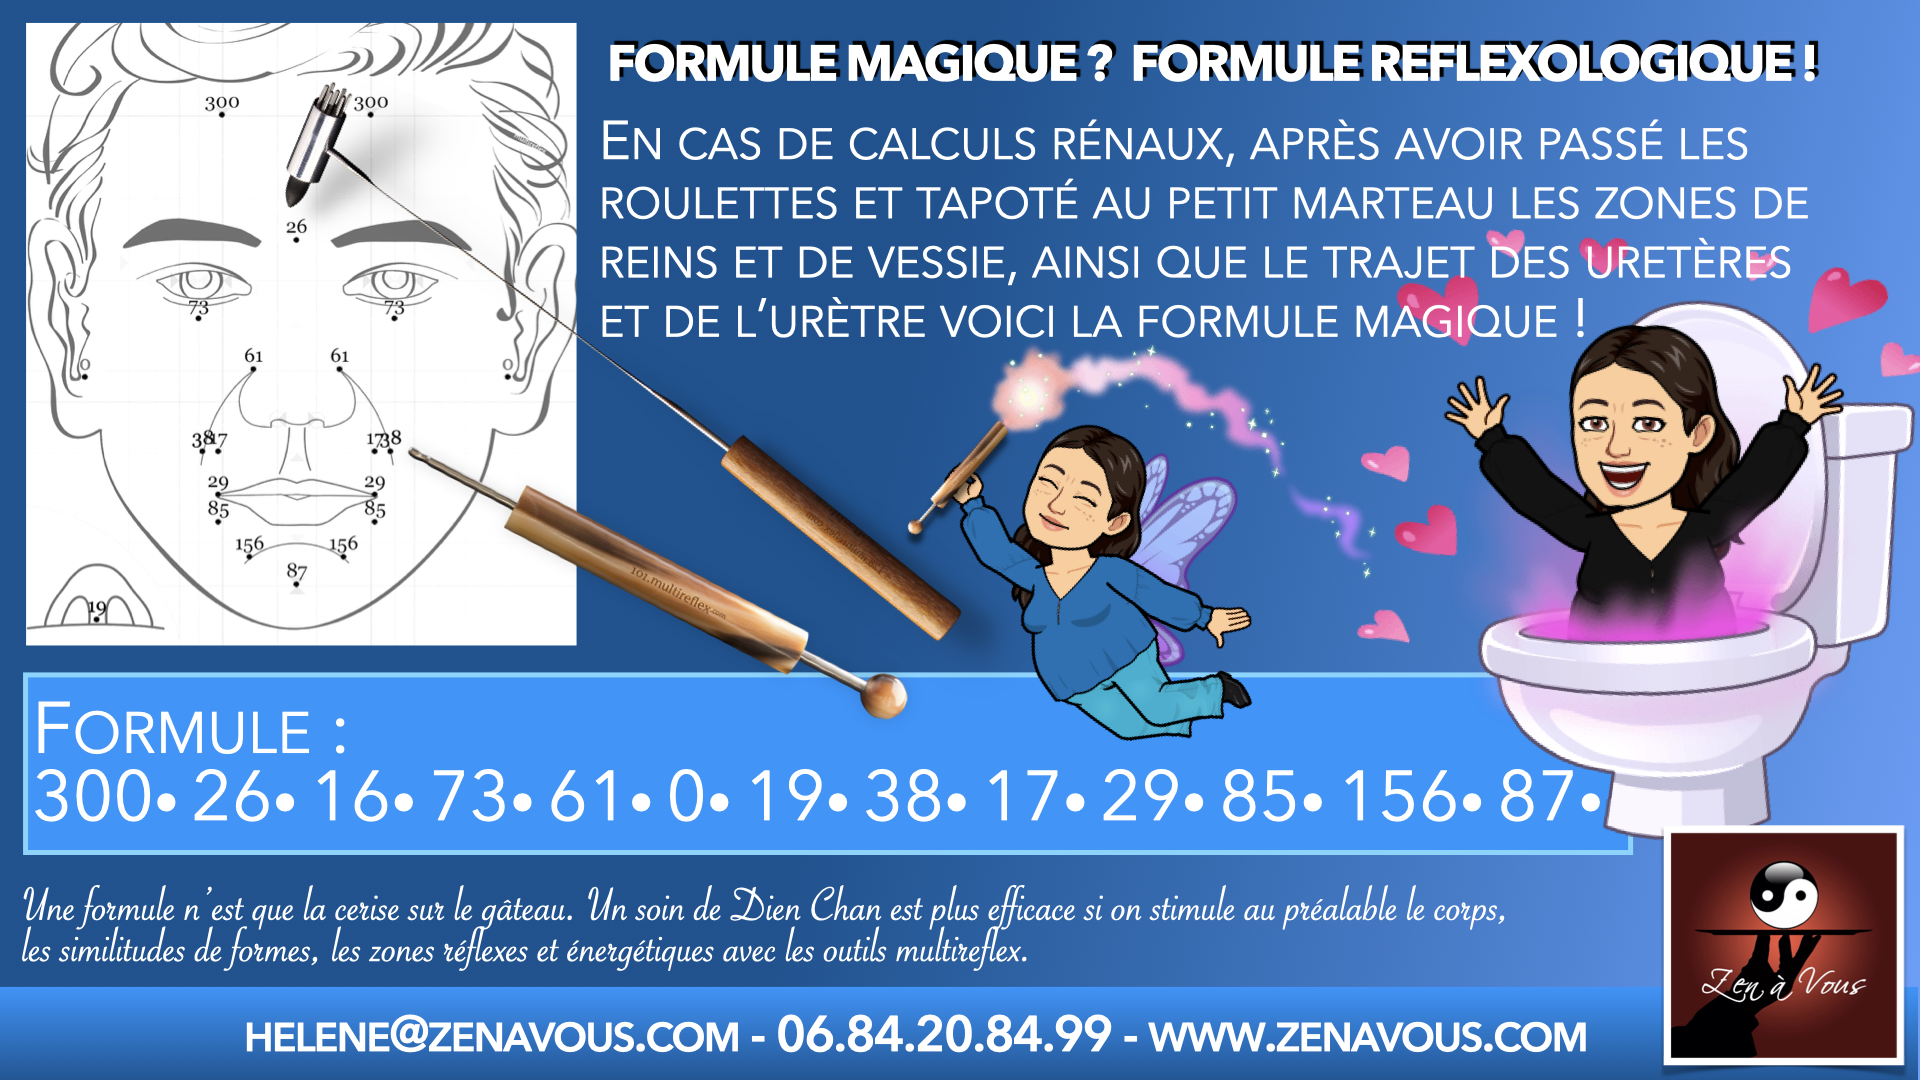 You are currently viewing Formule magique? Formule réflexologique !